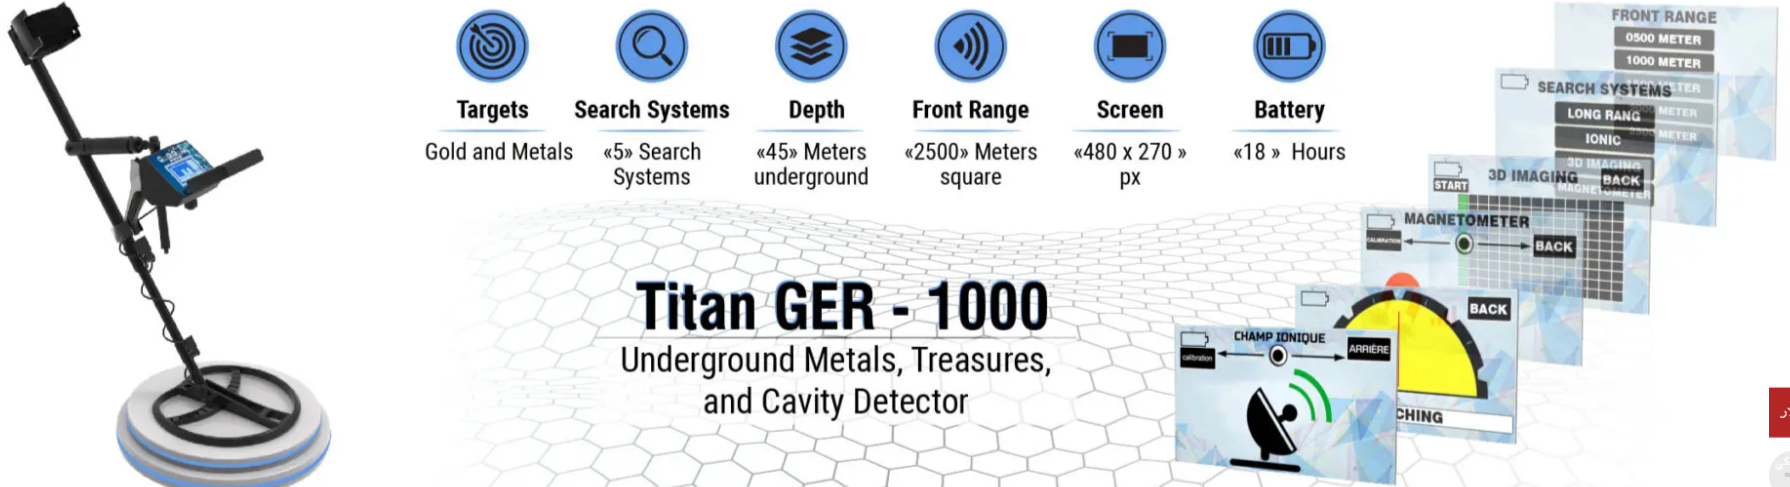 تيتان جير 1000 لكشف الذهب والمعادن الثمينة والكنوز والفراغات Do